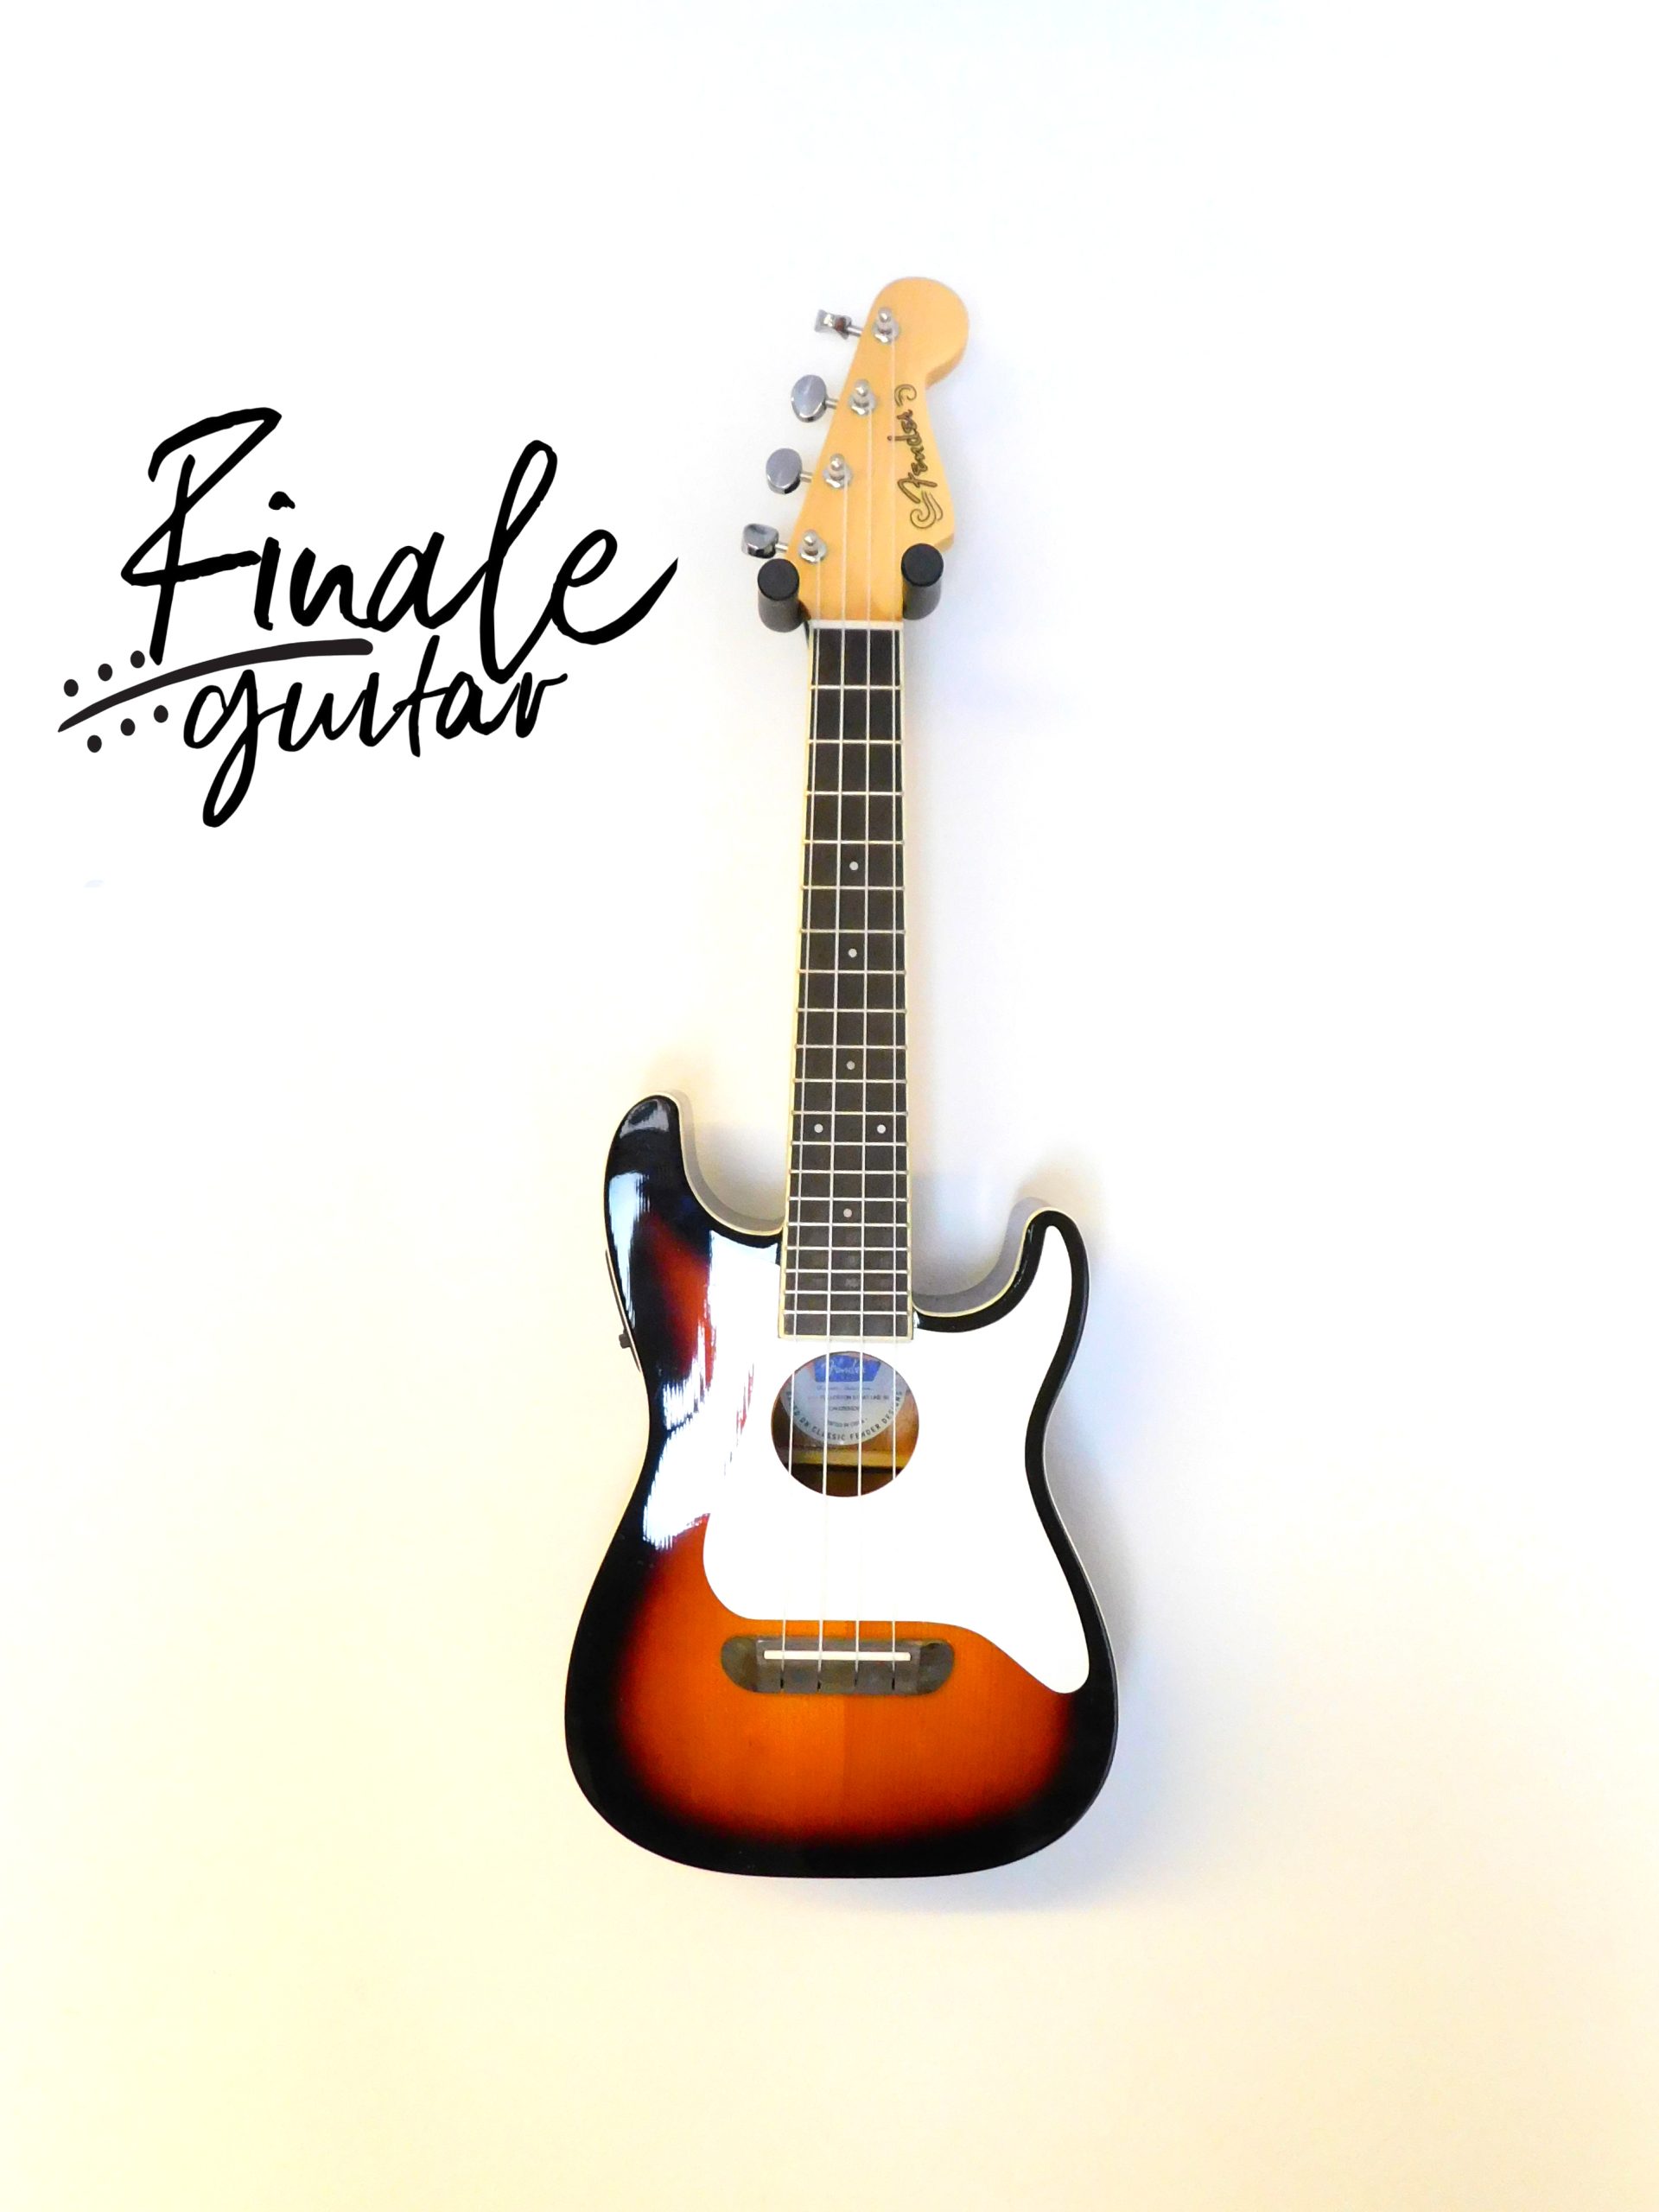 Fender Fullerton Strat ukulele sunburst for sale in our Sheffield guitar shop, Finale Guitar